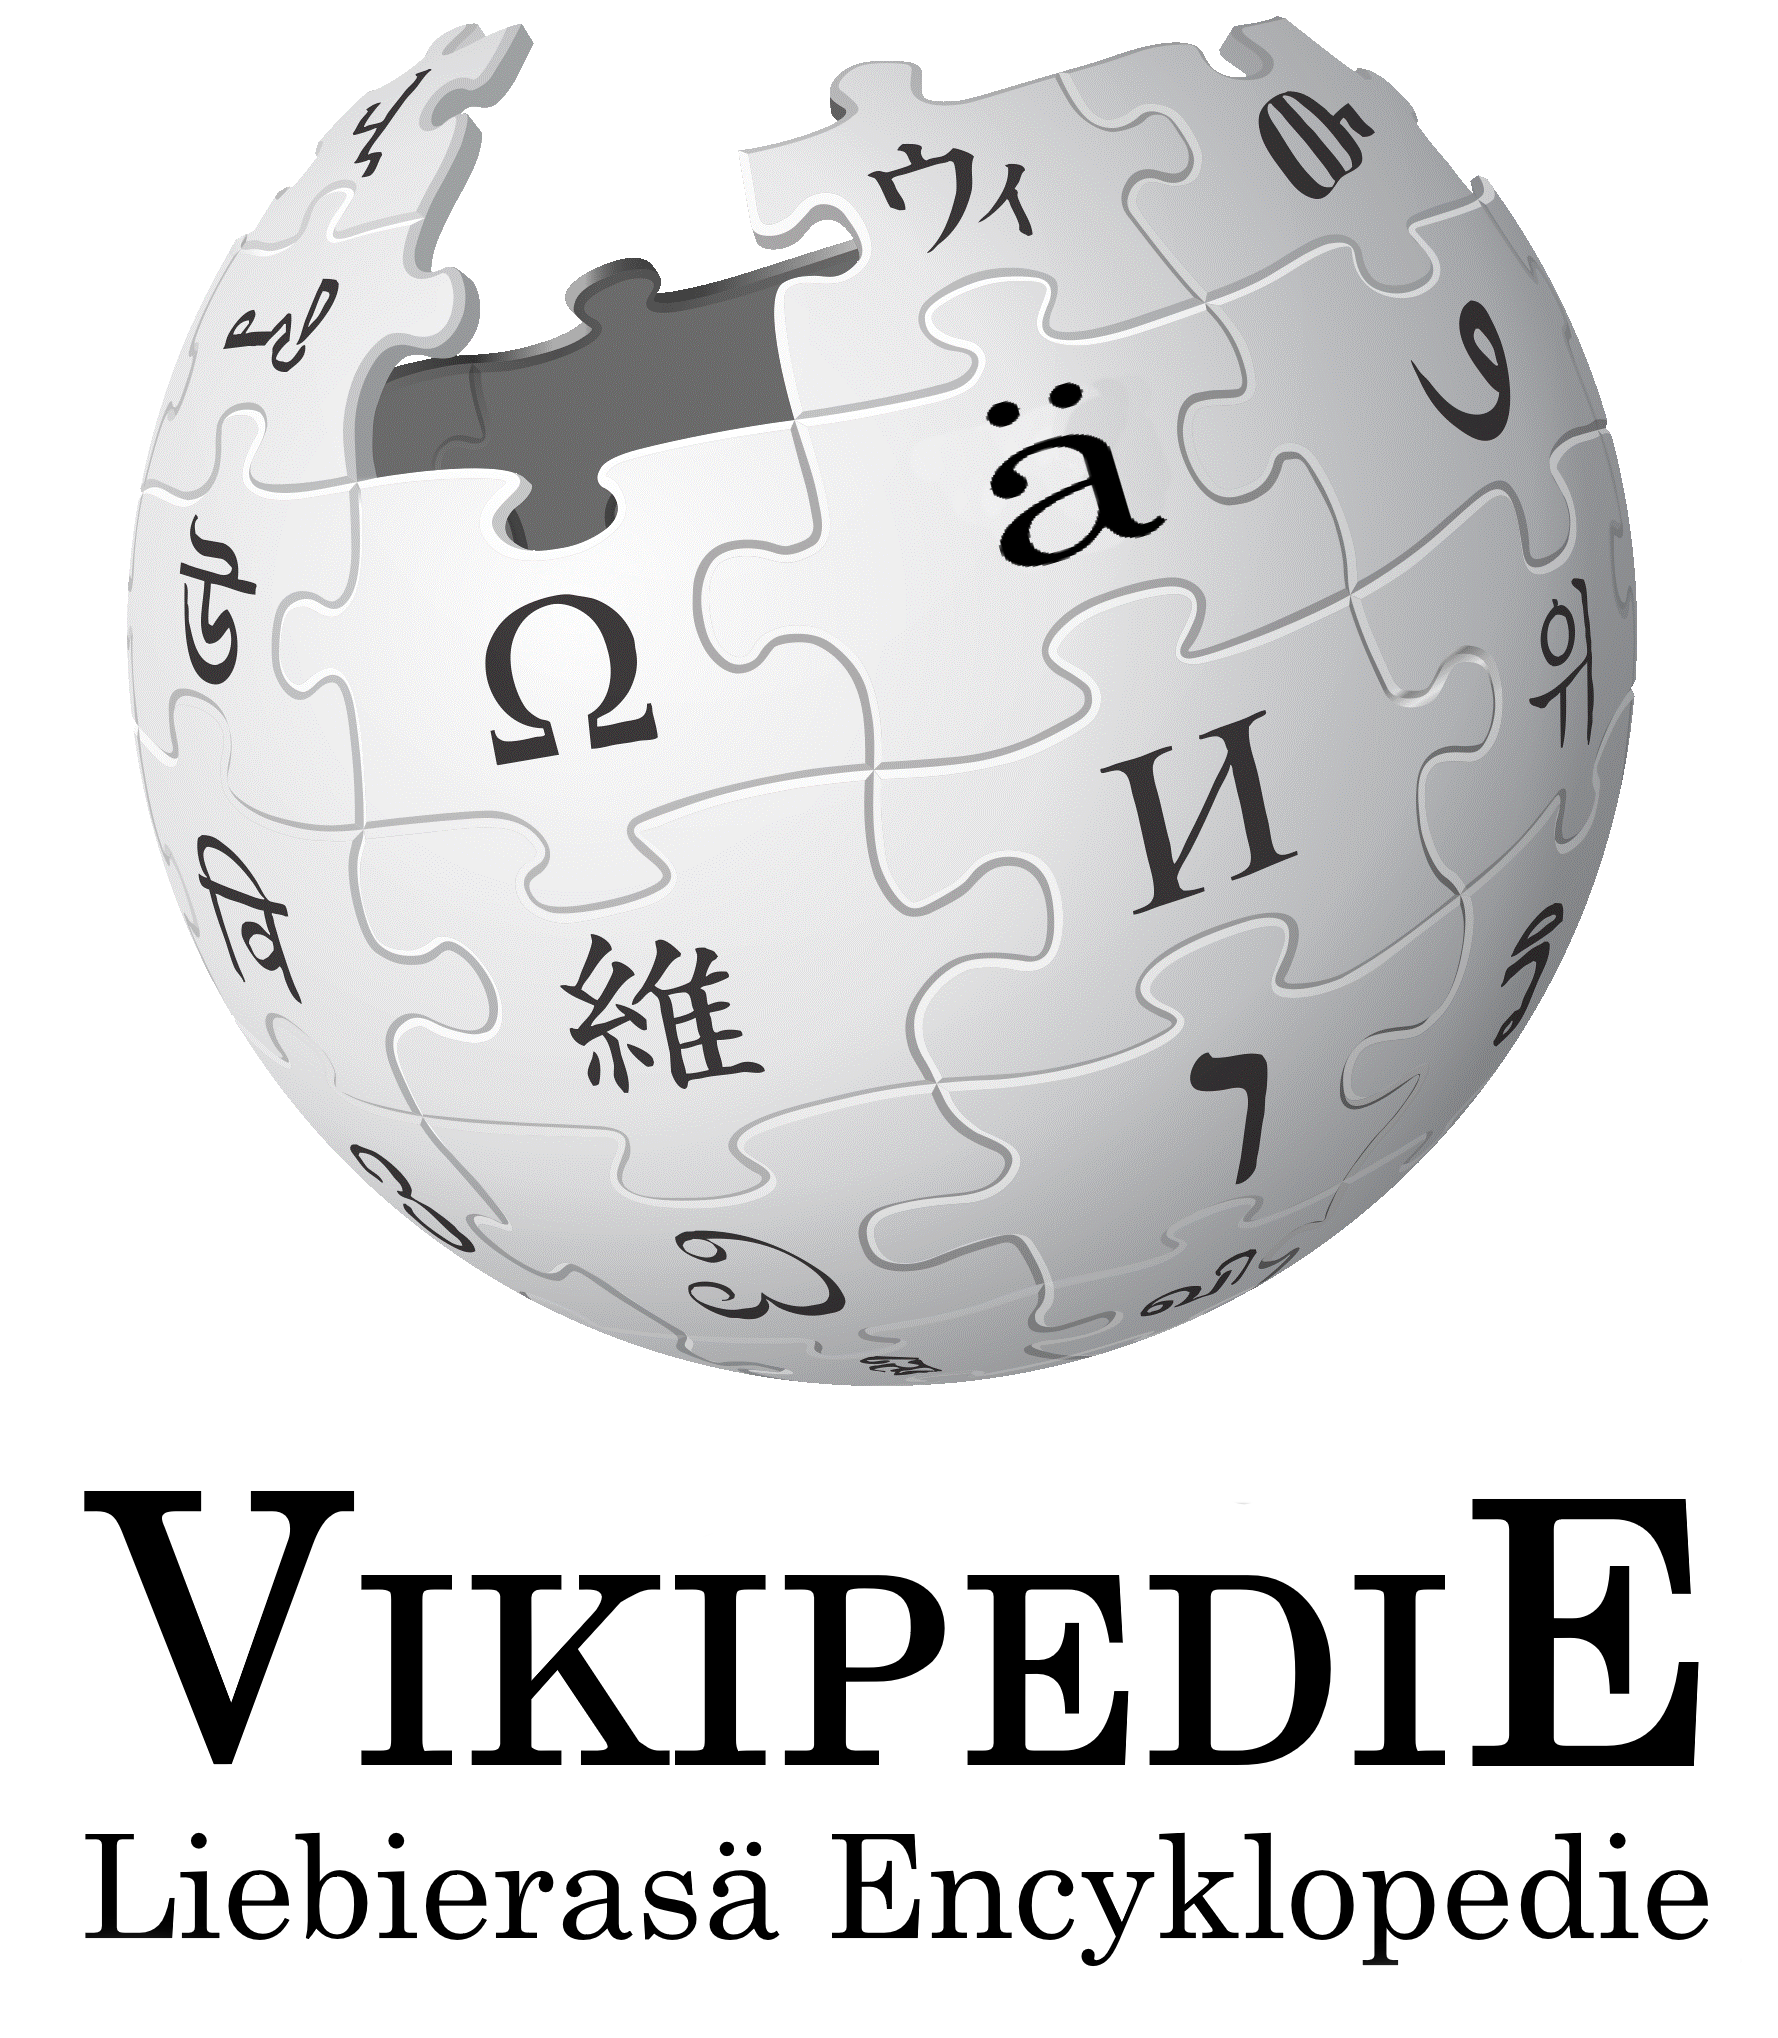 Логотип Вактарской (эландской) википедии [Vikipedie - Liebierasä Encyklopedie] (09062017).png